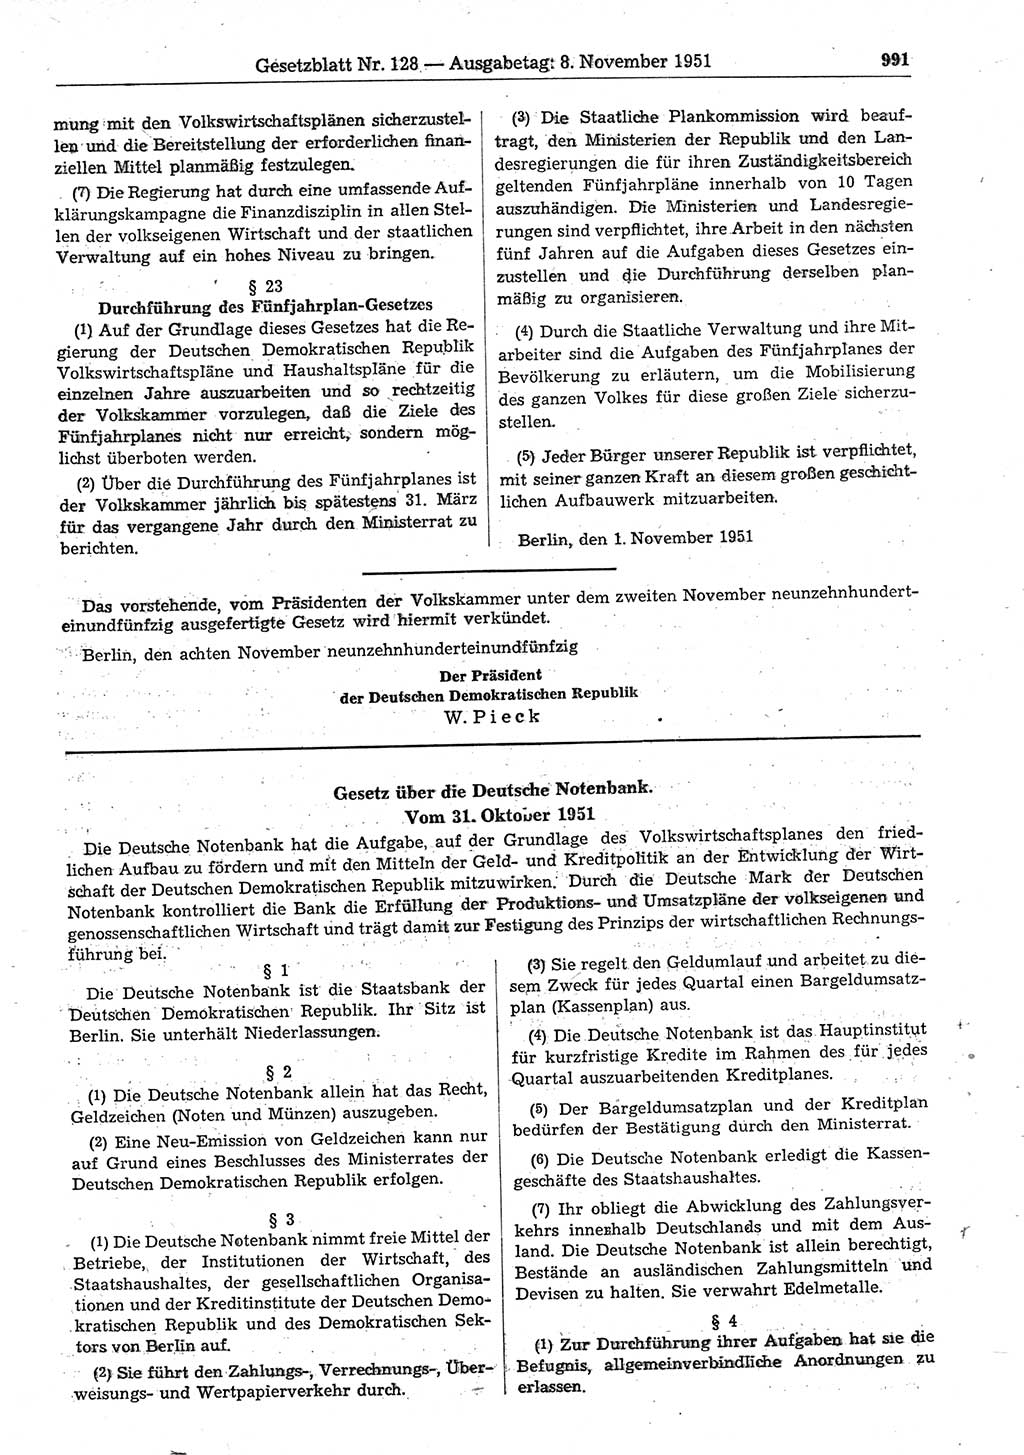 Gesetzblatt (GBl.) der Deutschen Demokratischen Republik (DDR) 1951, Seite 991 (GBl. DDR 1951, S. 991)